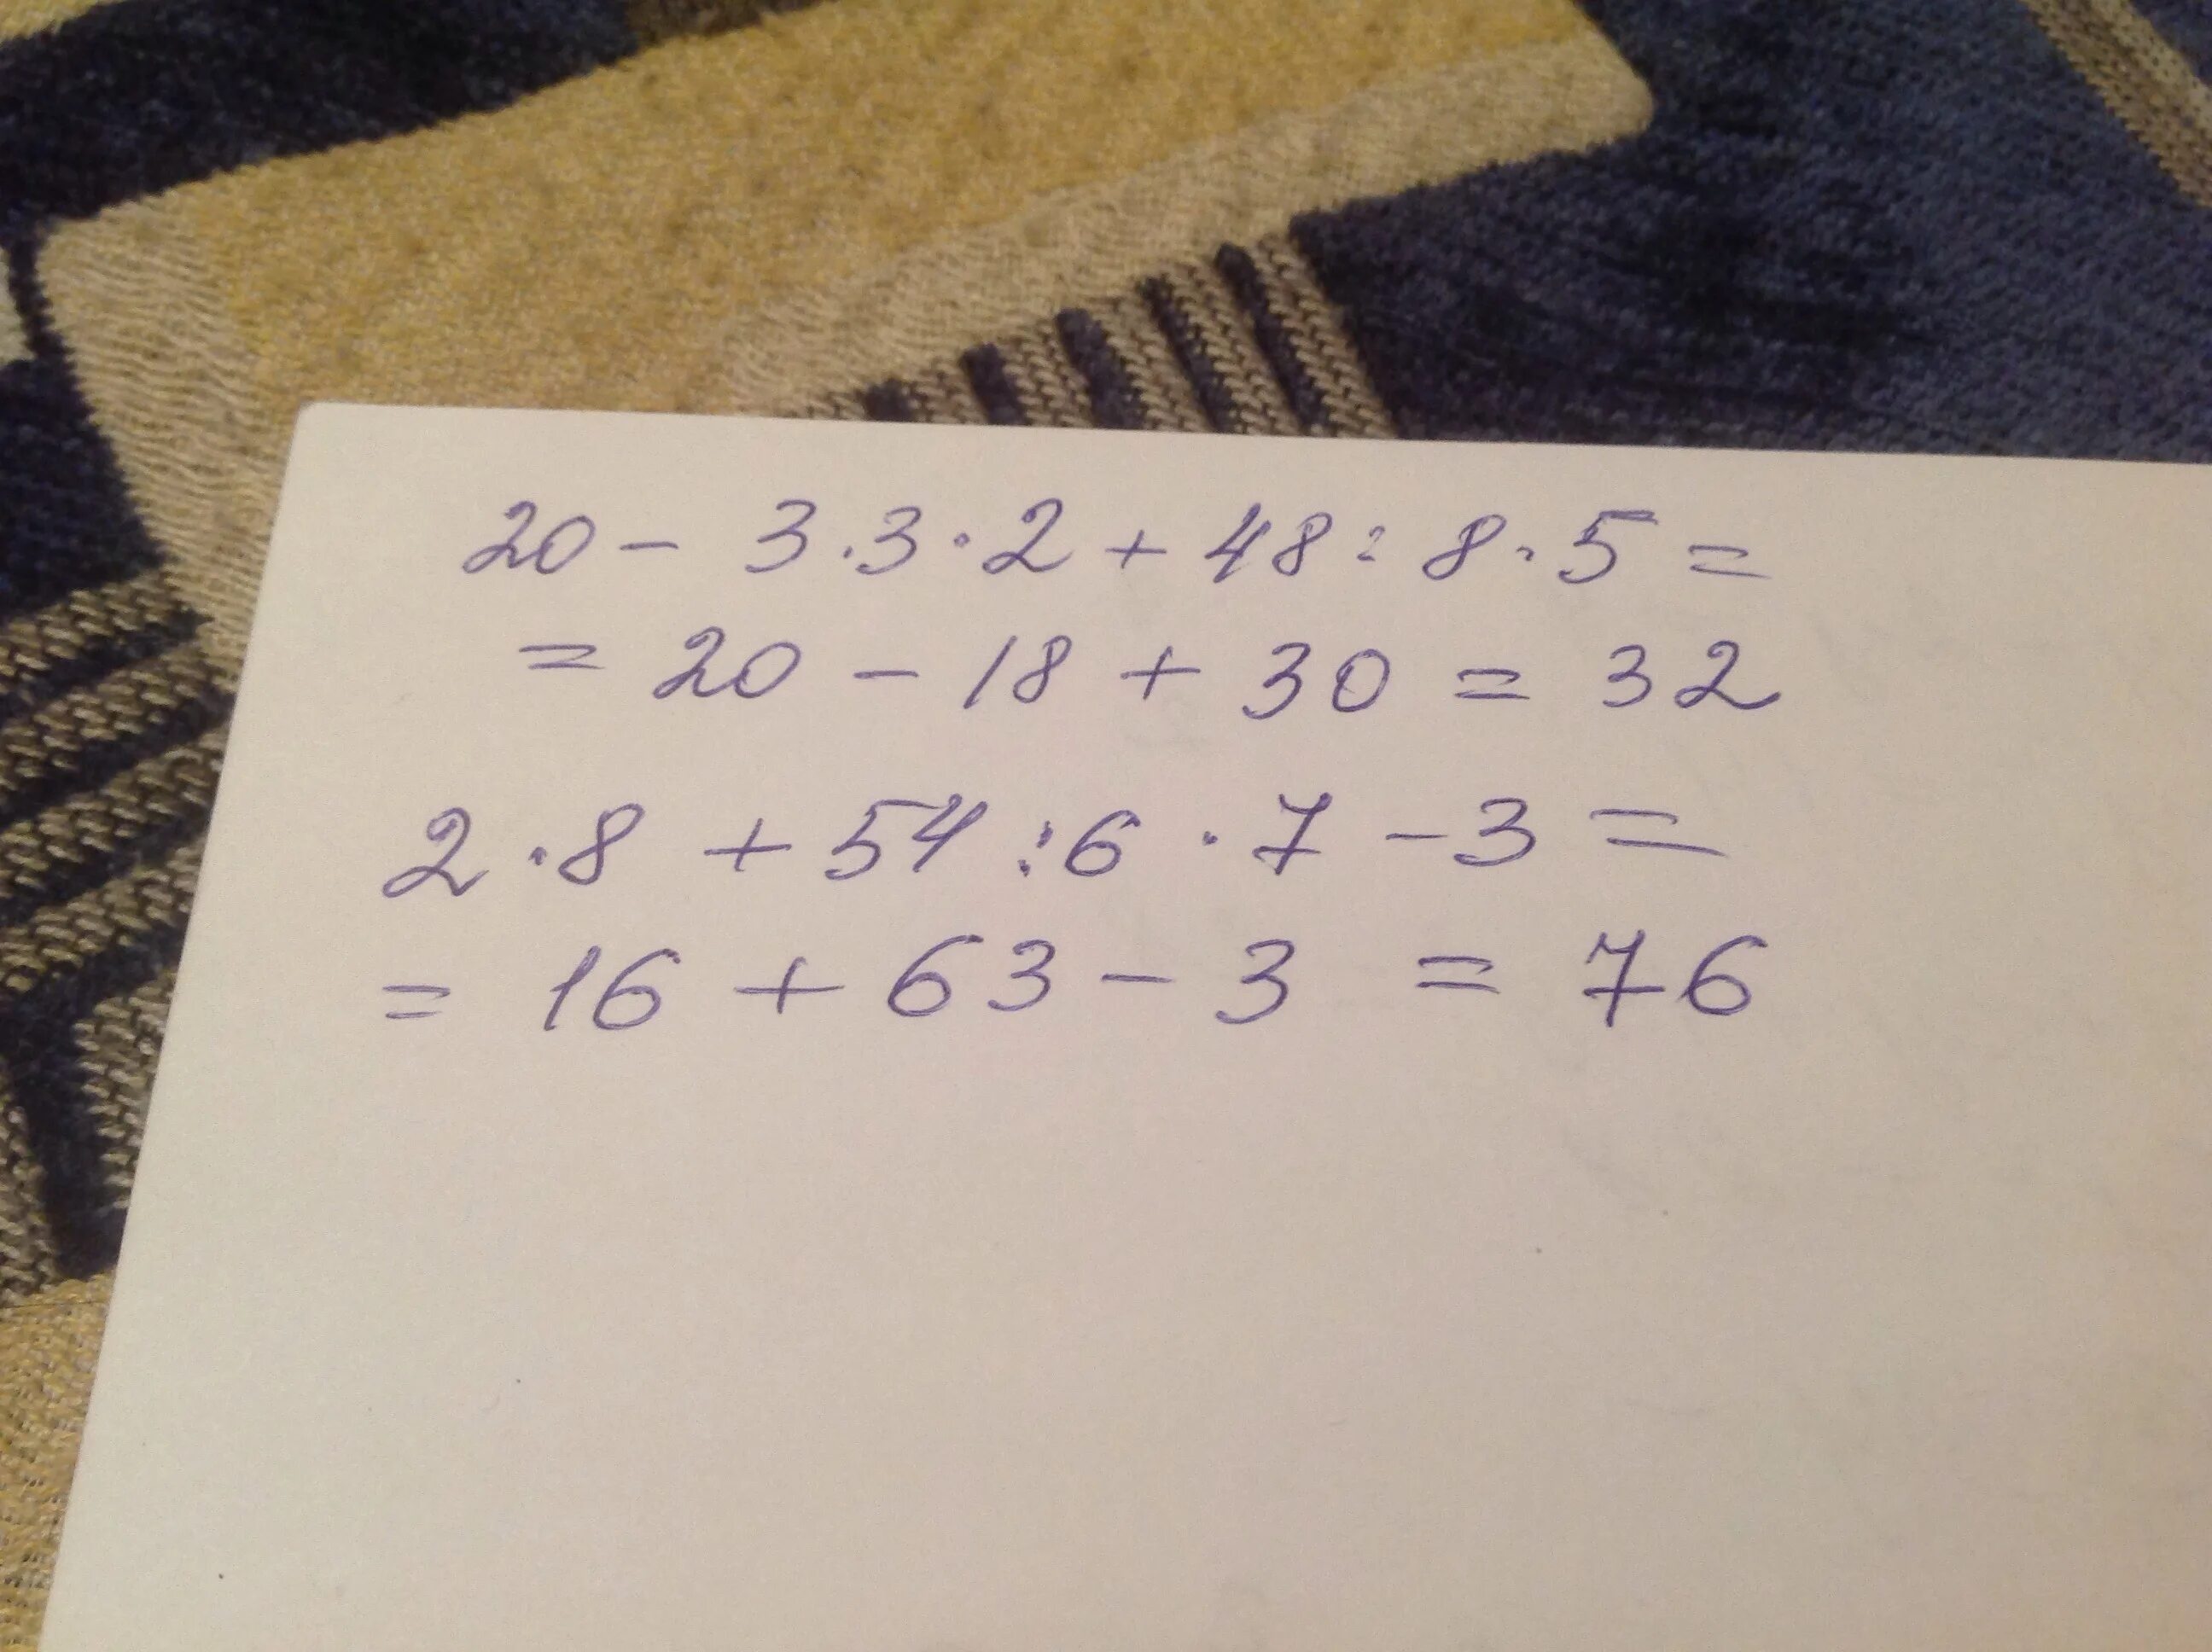 9 20 3 8 решение. Найдите значение выражения 20 6 3/11+1 8/11 7 2/5-5.8 5. Найдите значение выражения: 3 20 :6 2 +72 - 5,8 : 5. (i) 5. (7z-93):48:8=2 решить. 7z 93 48 8 2.